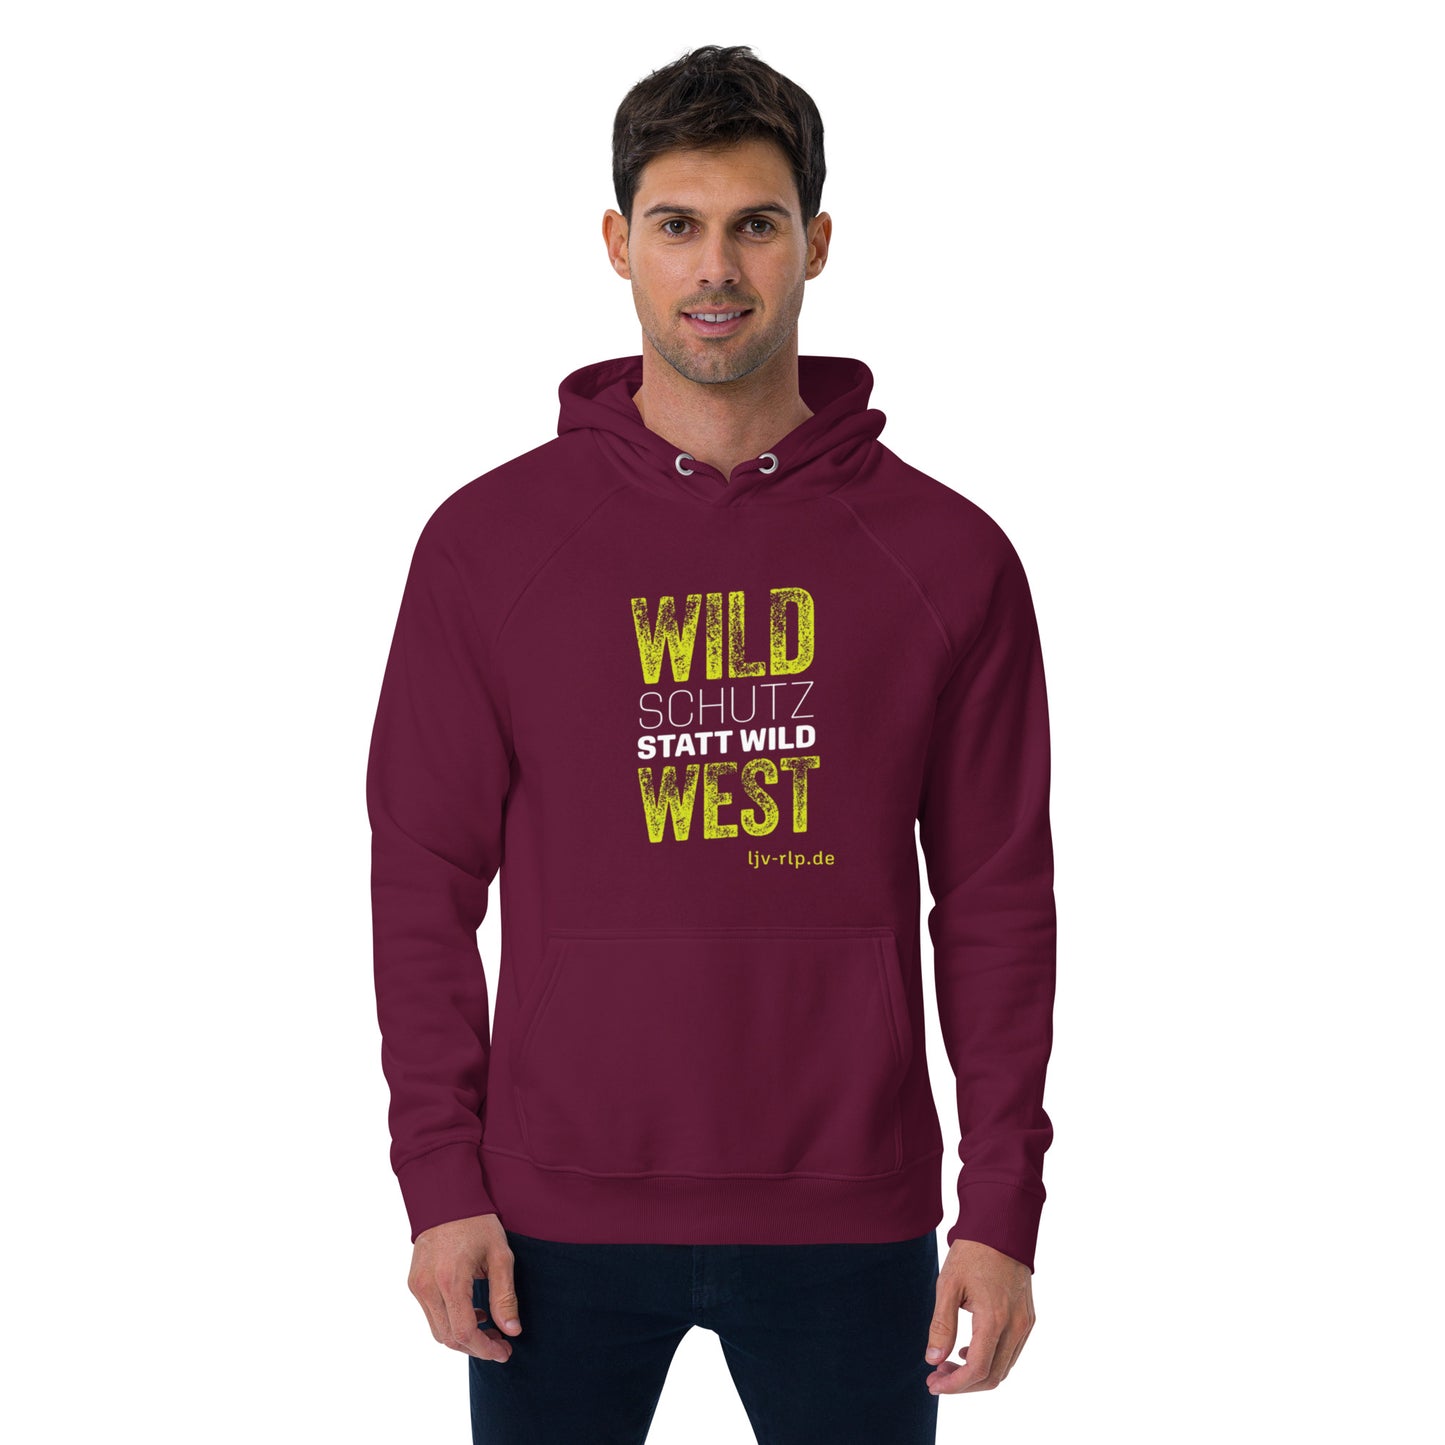 Pullover "Wildschutz statt Wildwest"